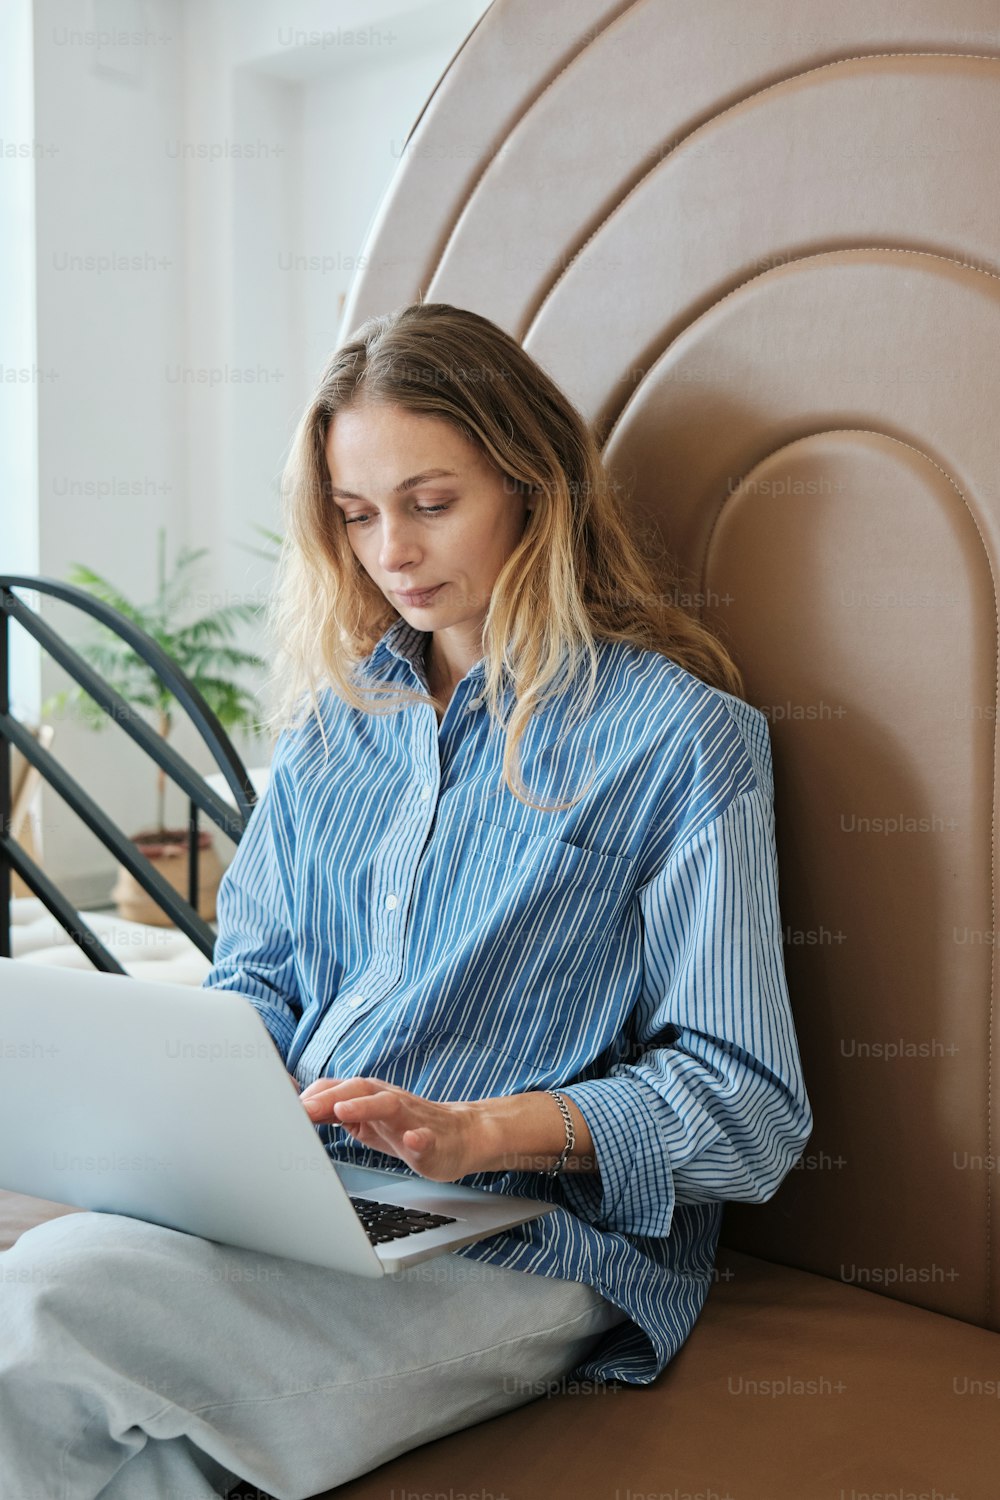 una persona seduta su una sedia che usa un computer portatile